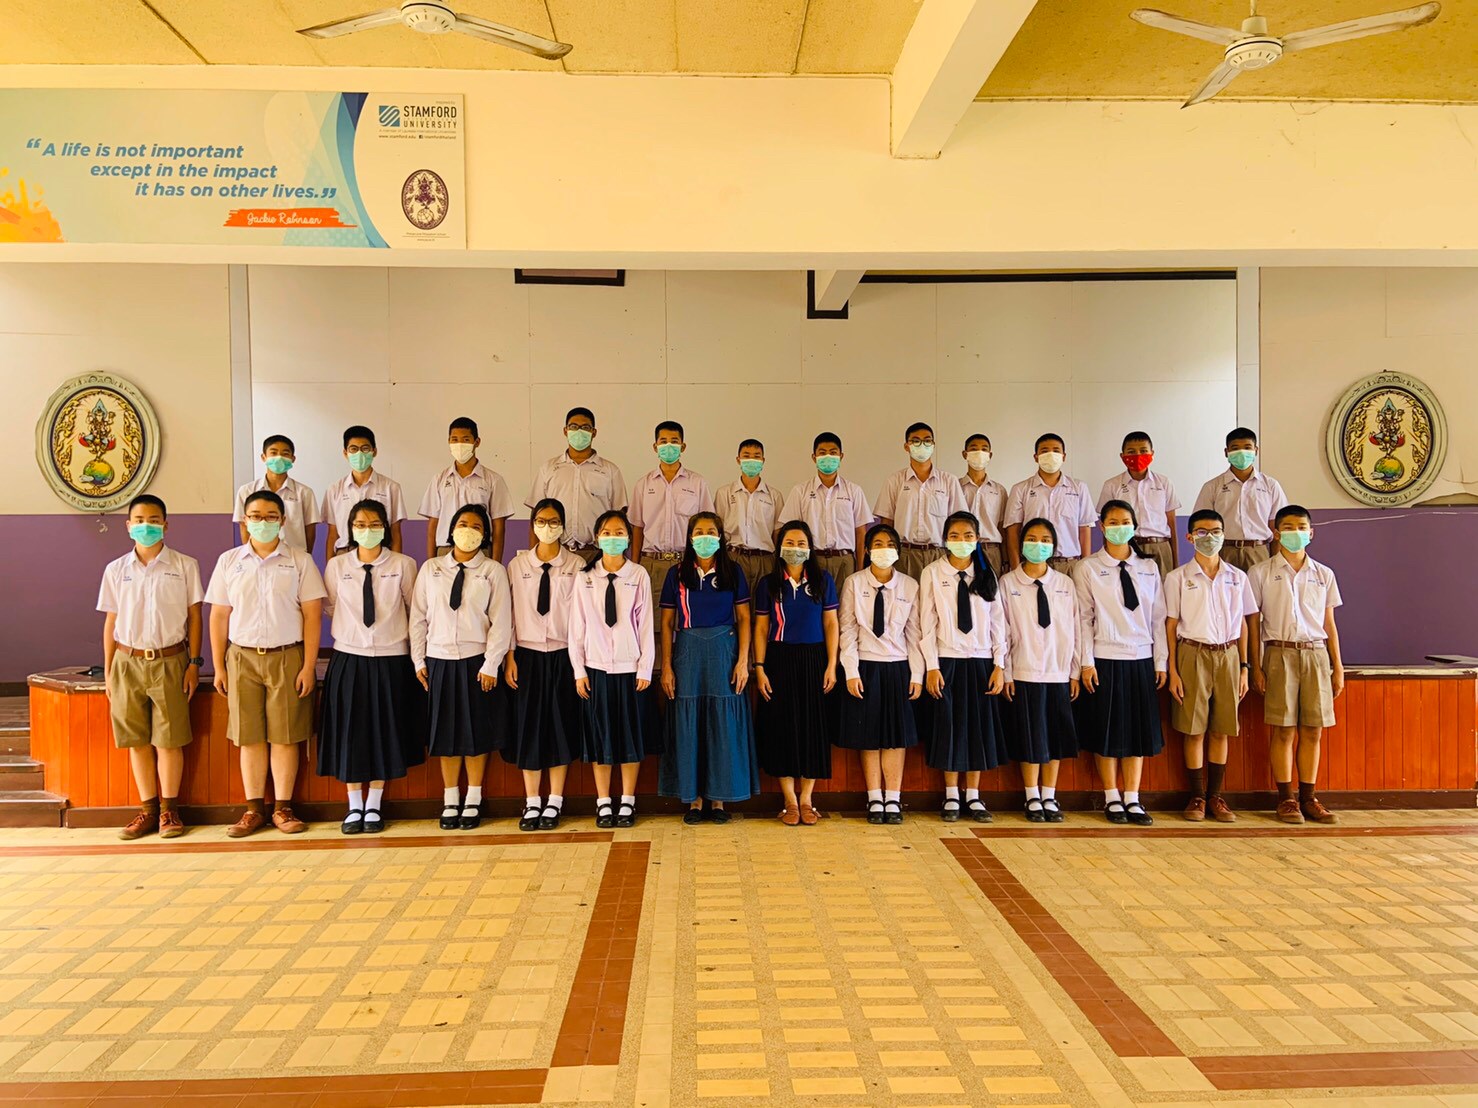 นักเรียนโรงเรียนอุตรดิตถ์ เข้าร่วมการแข่งขันทางวิชาการ ระดับนานาชาติ ประจำปี พ.ศ. 2563 (รอบสอง ระดับประเทศ)